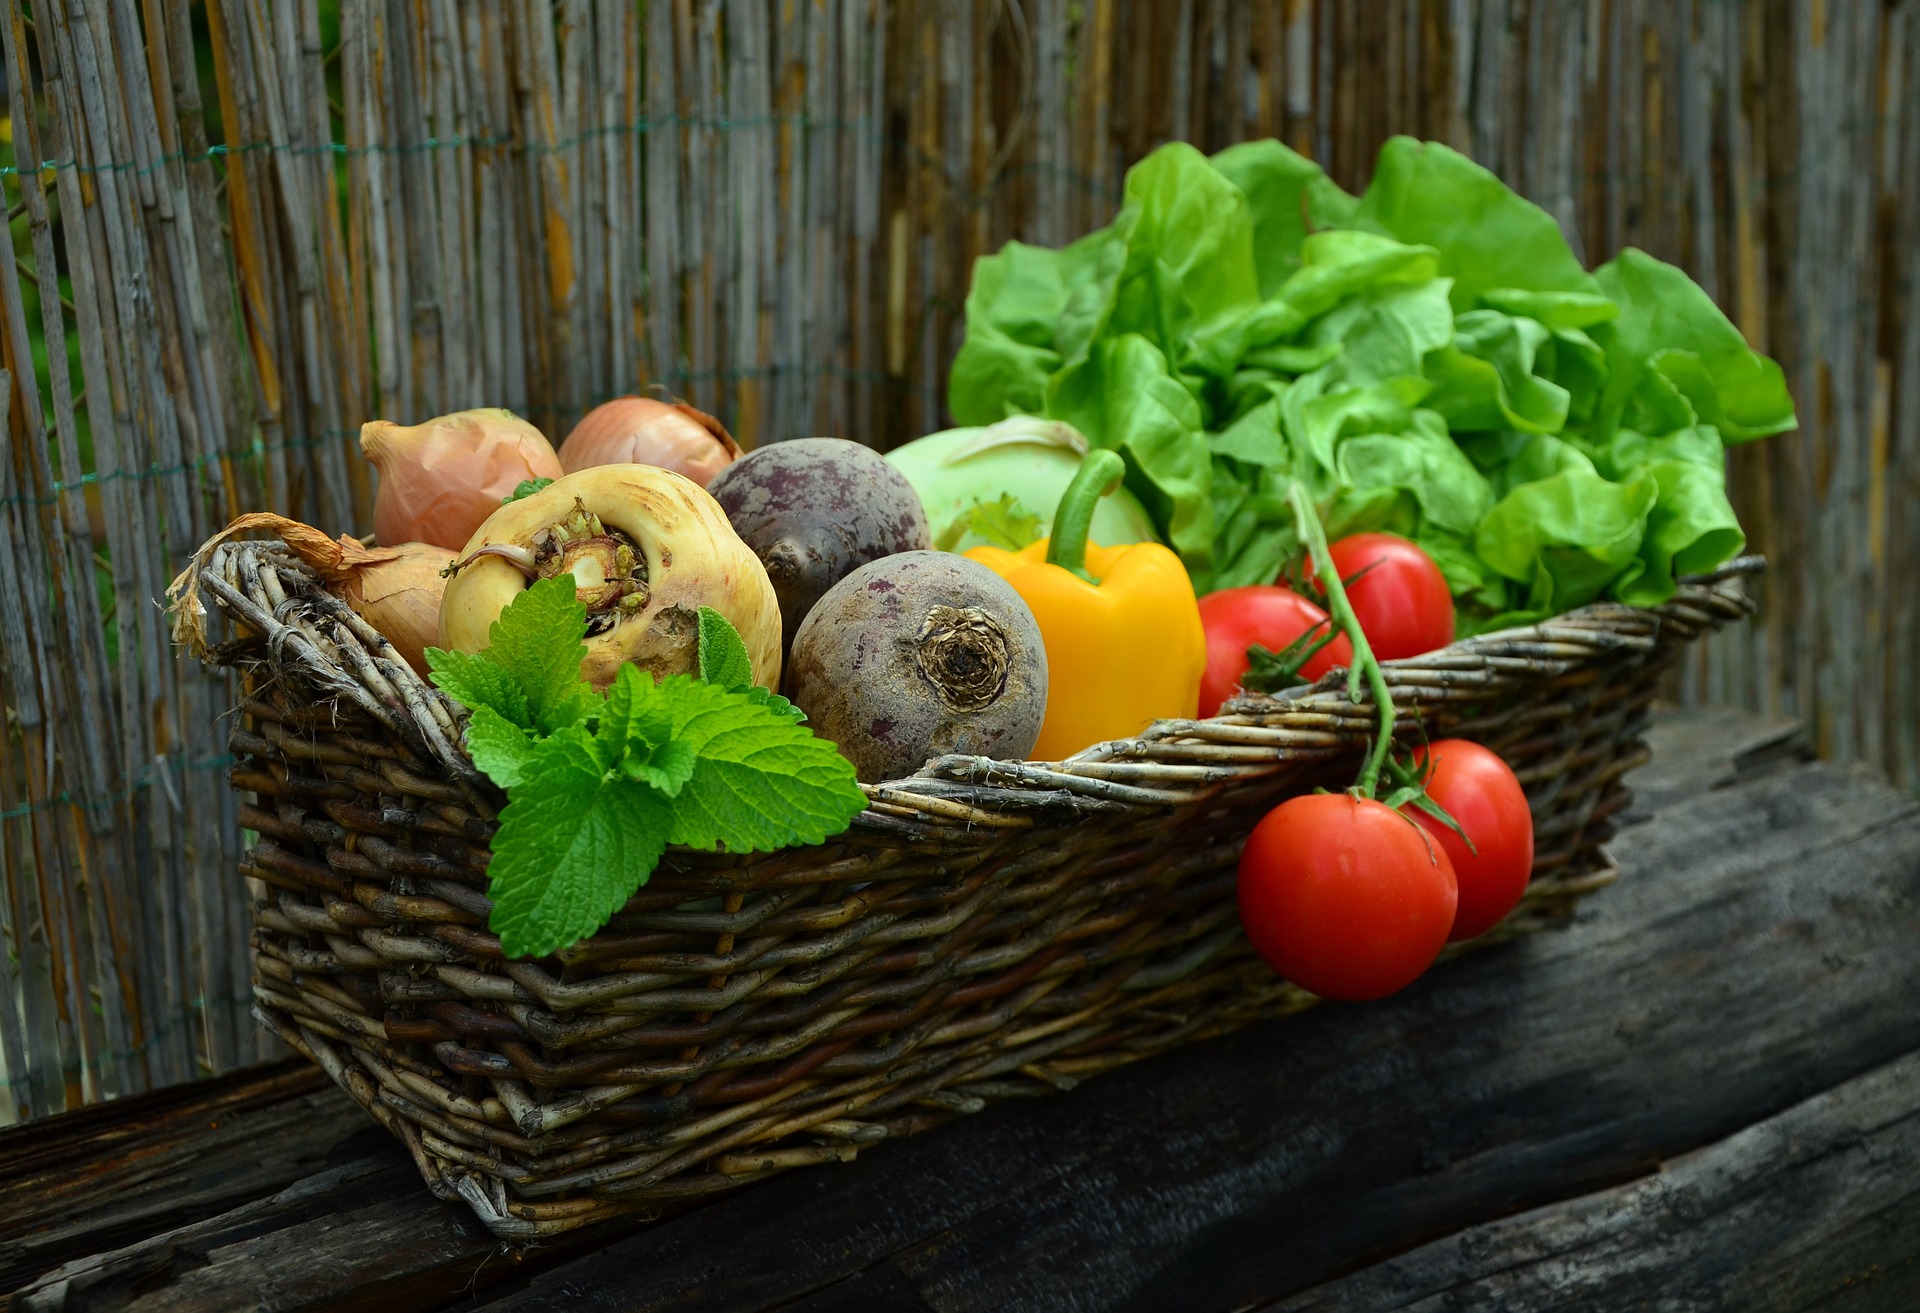 A basket of vegetables.